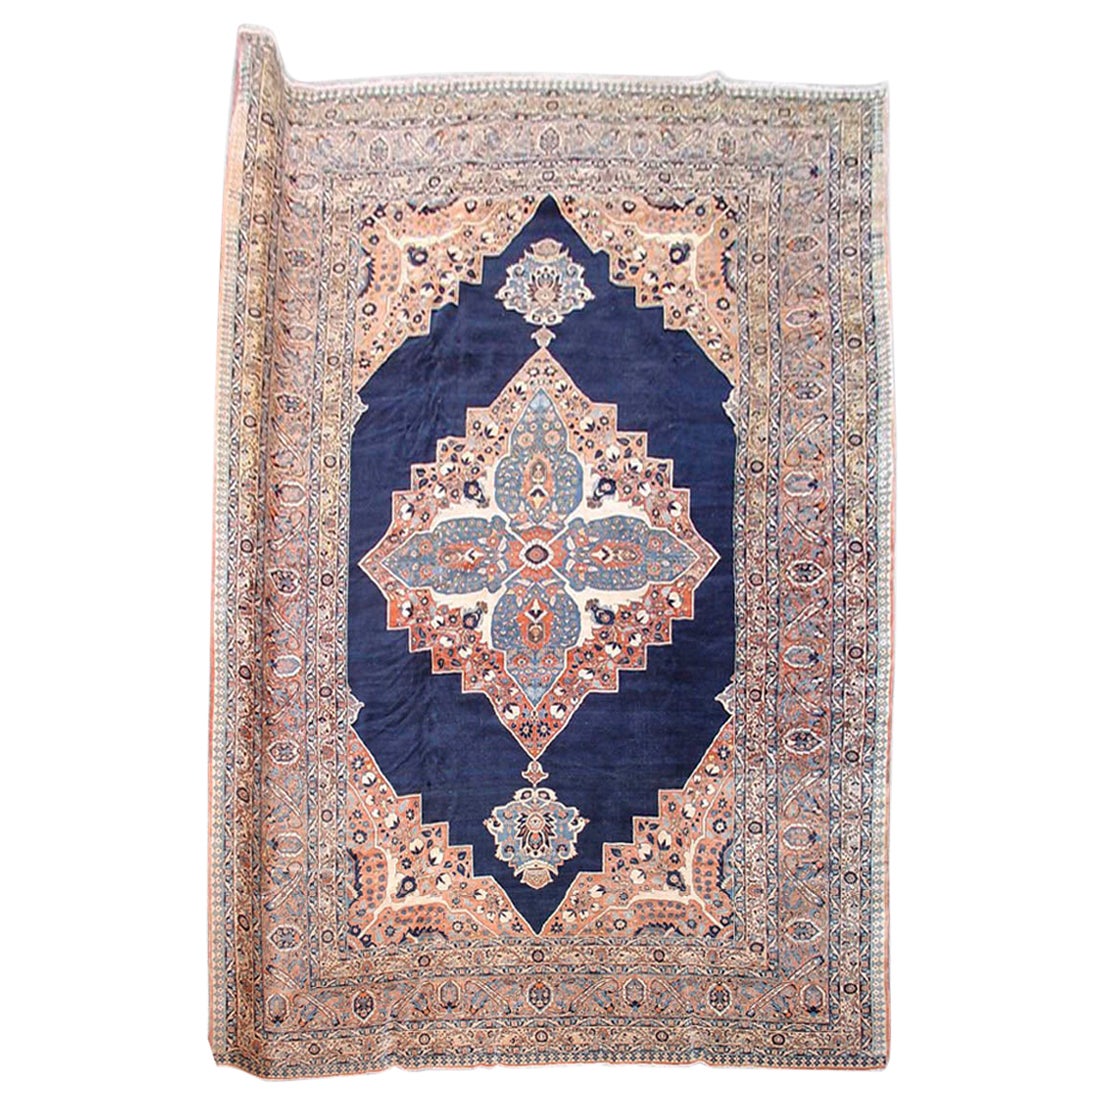 Antique Large Indigo Persian Tabriz Carpet, 19th Century